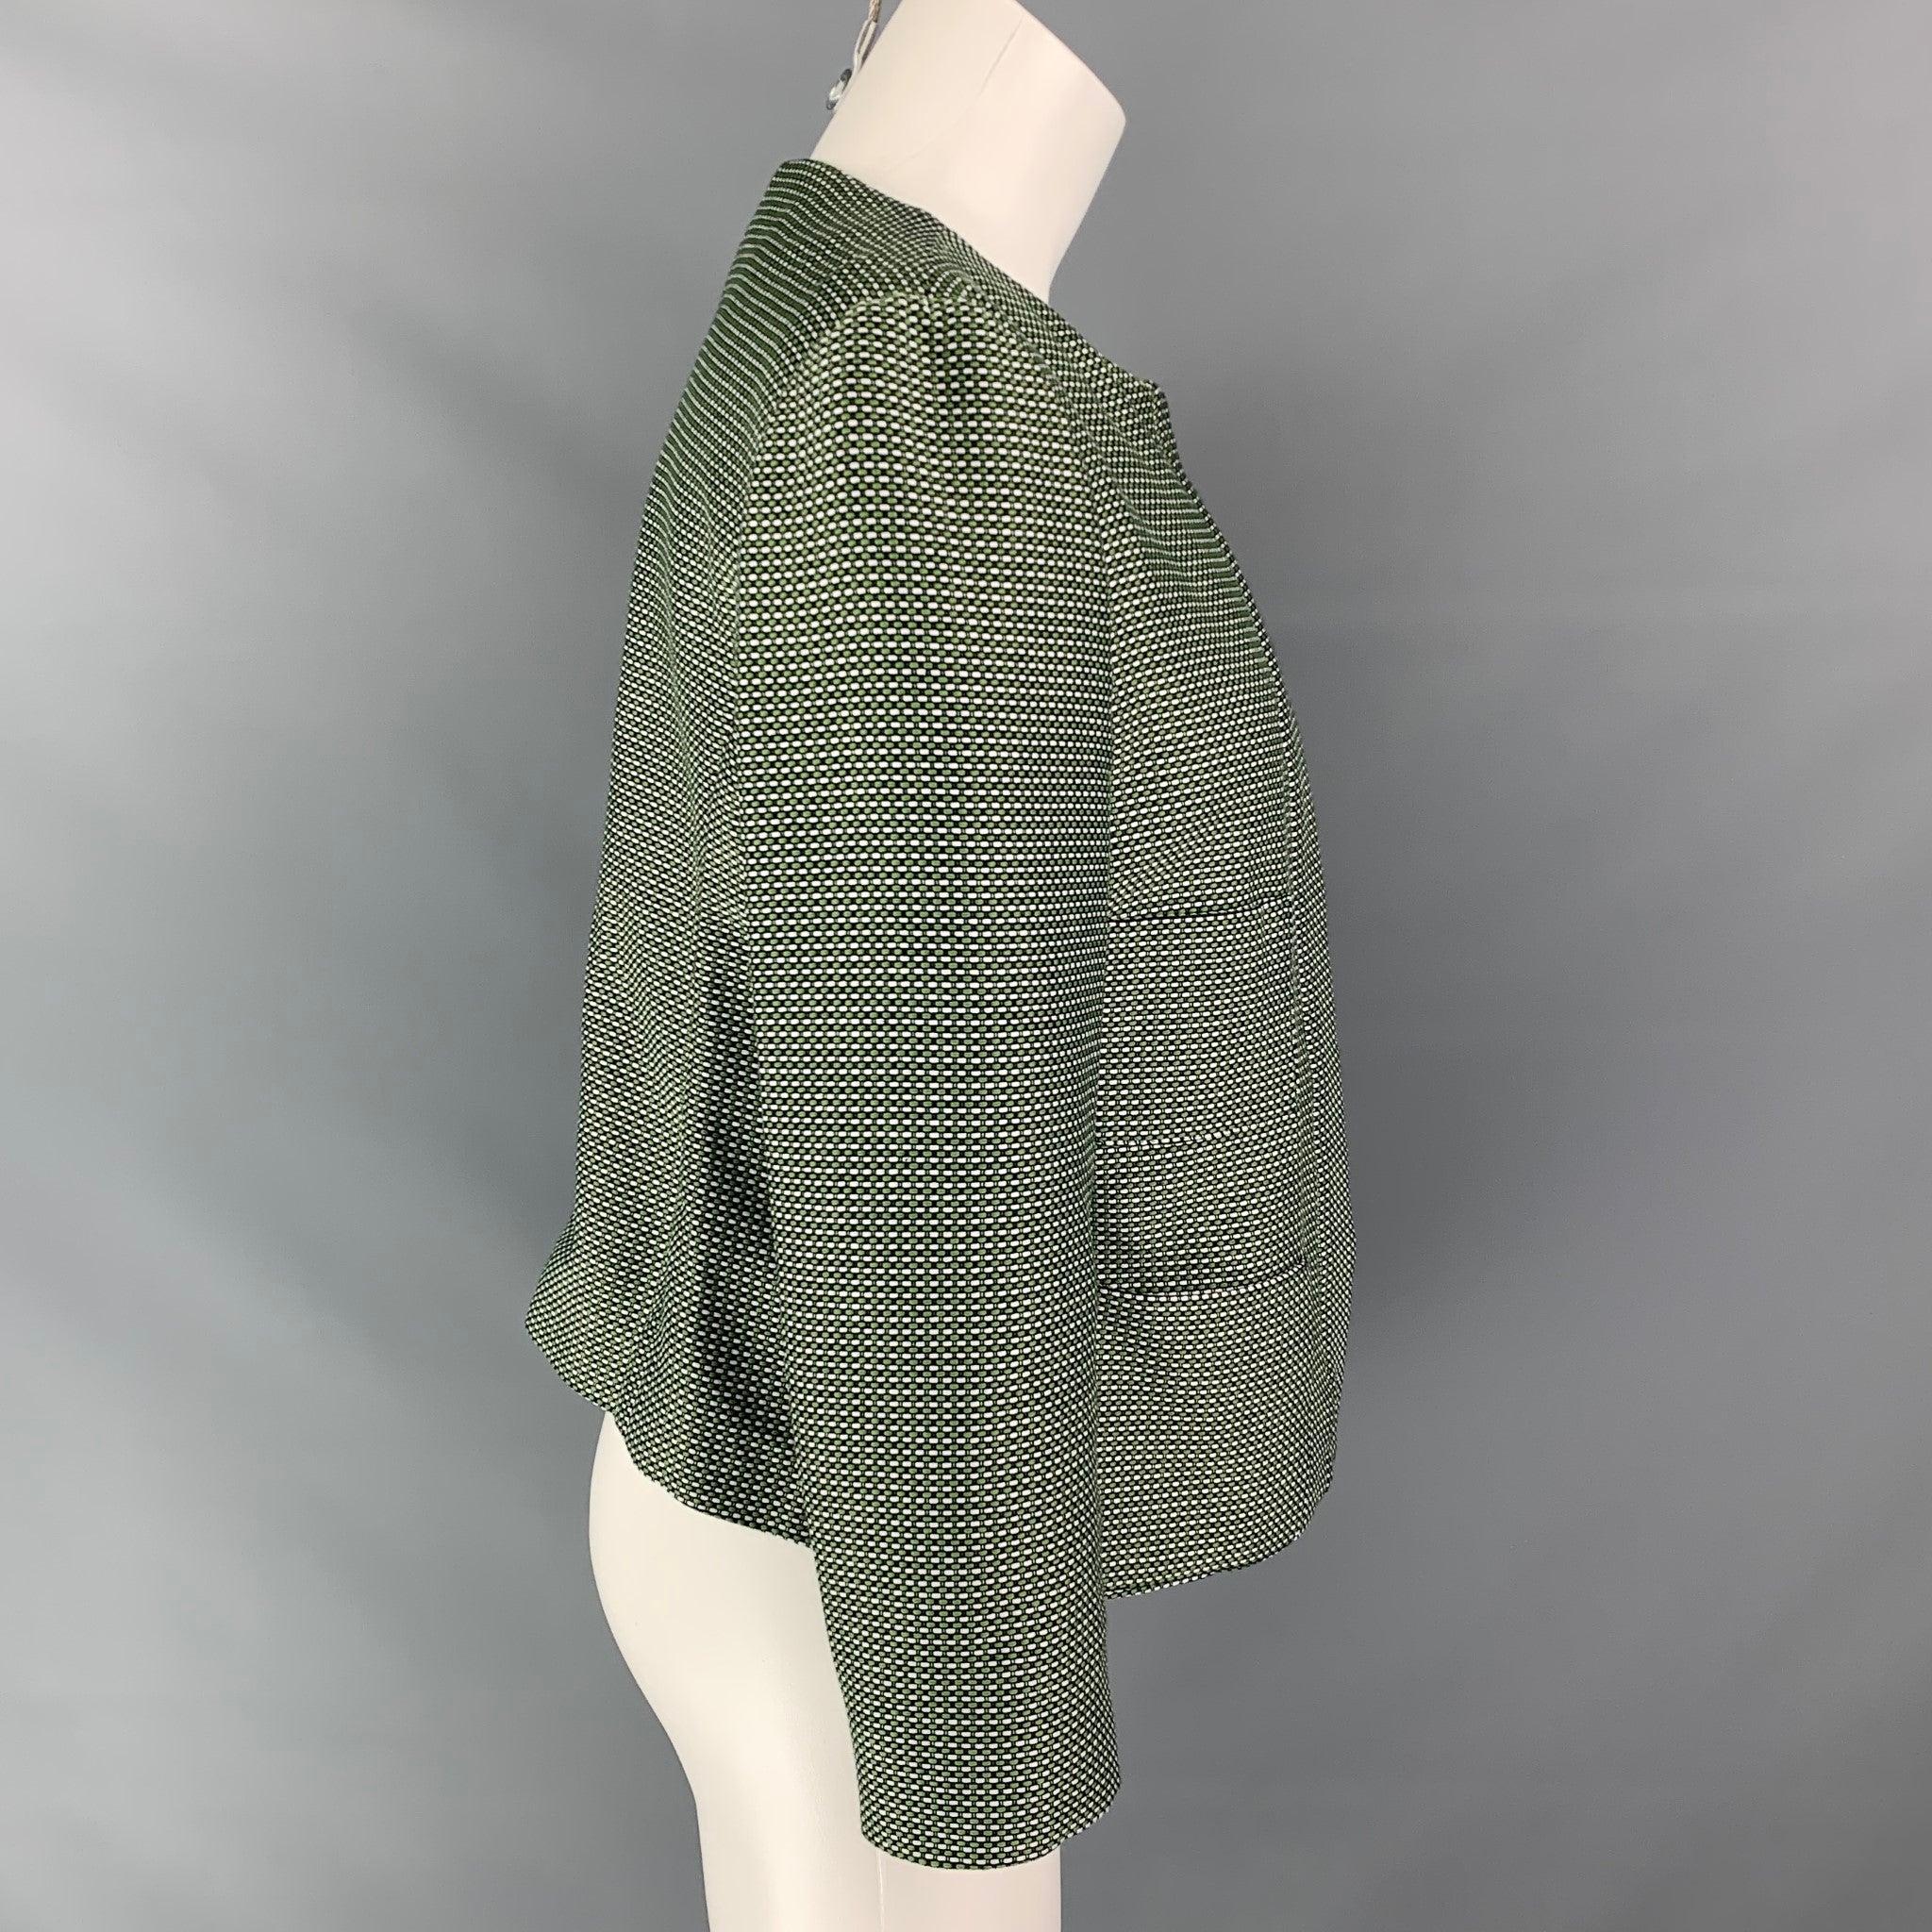 Black ARMANI COLLEZIONI Size 12 Green & White Woven Textured Cotton / Polyester Jacket